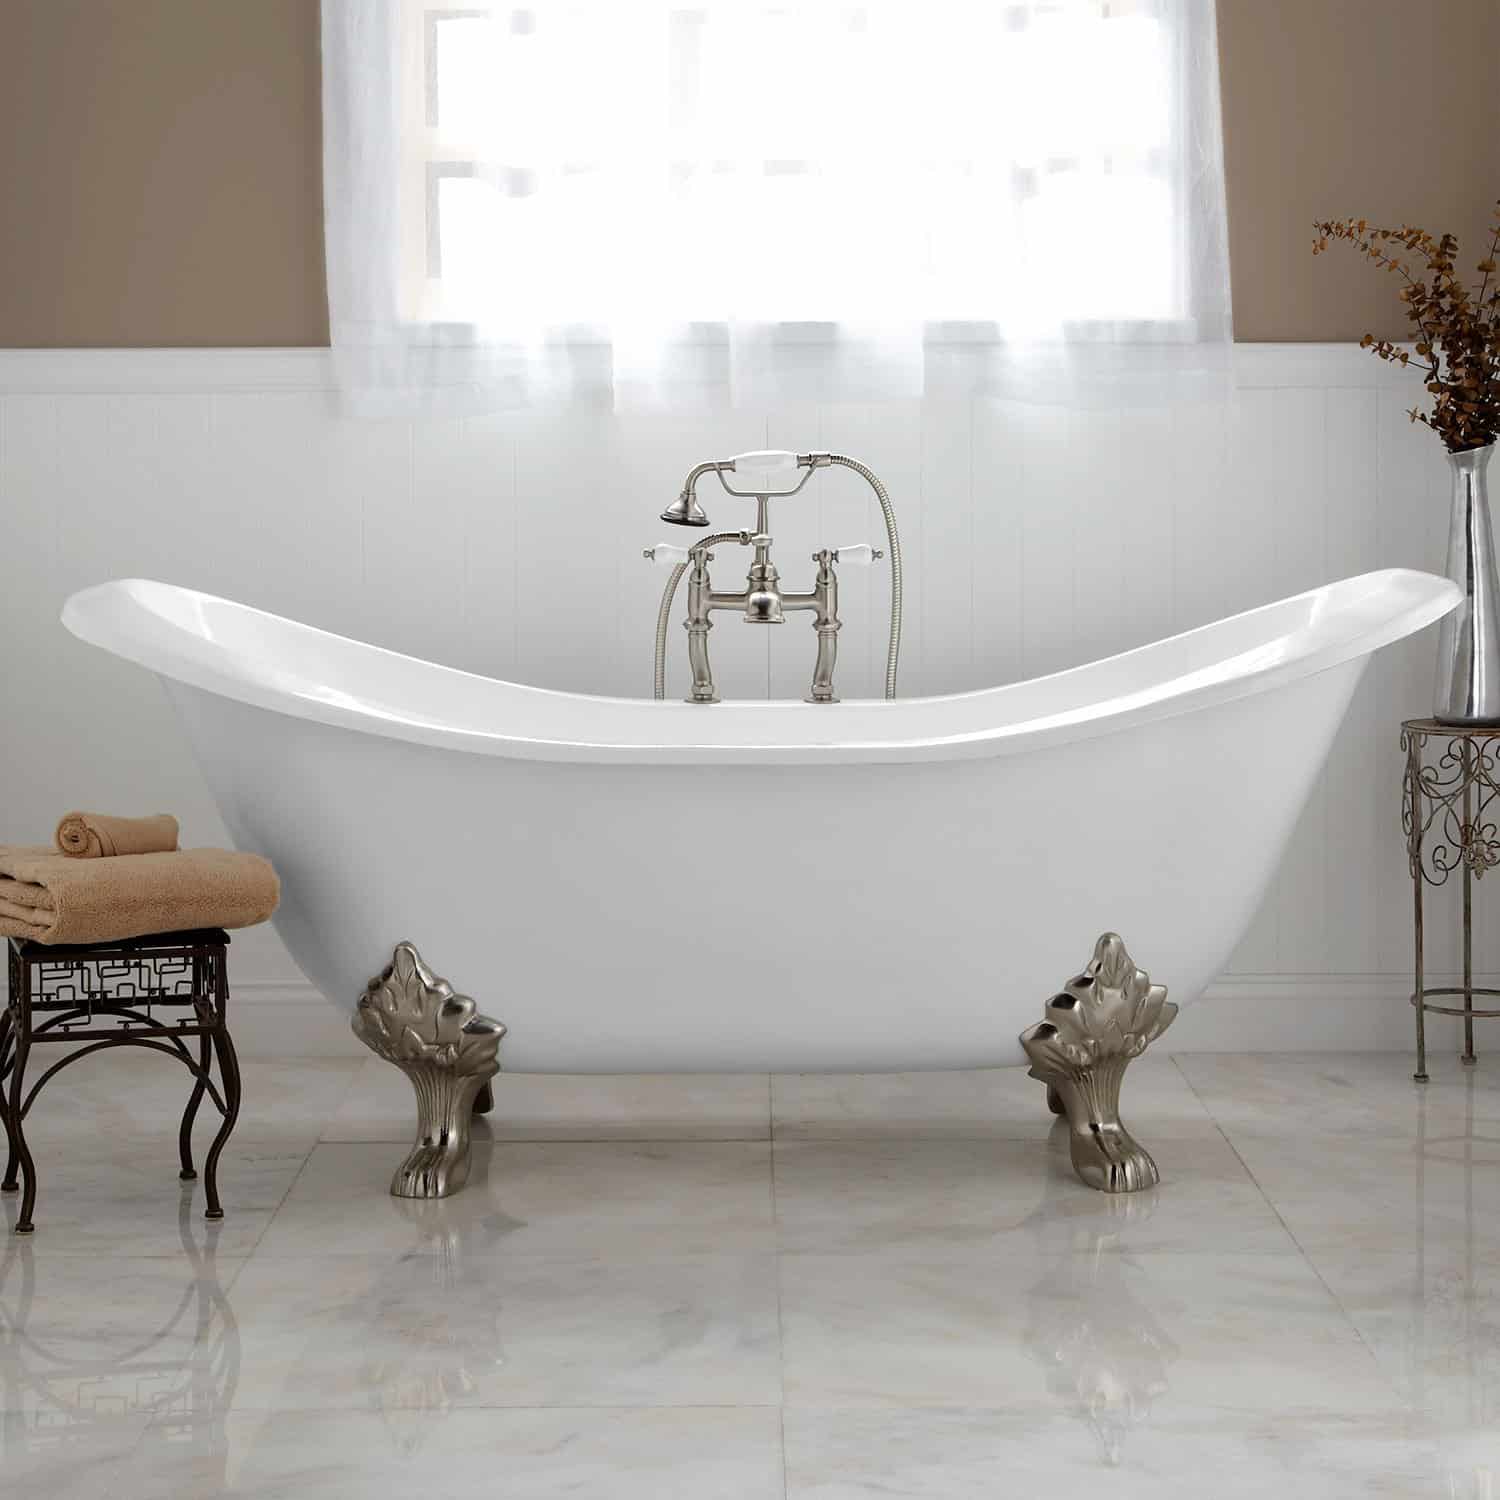 Clawfoot Bathtub Ultimate Guide For, Corner Clawfoot Bathtub Design Ideas